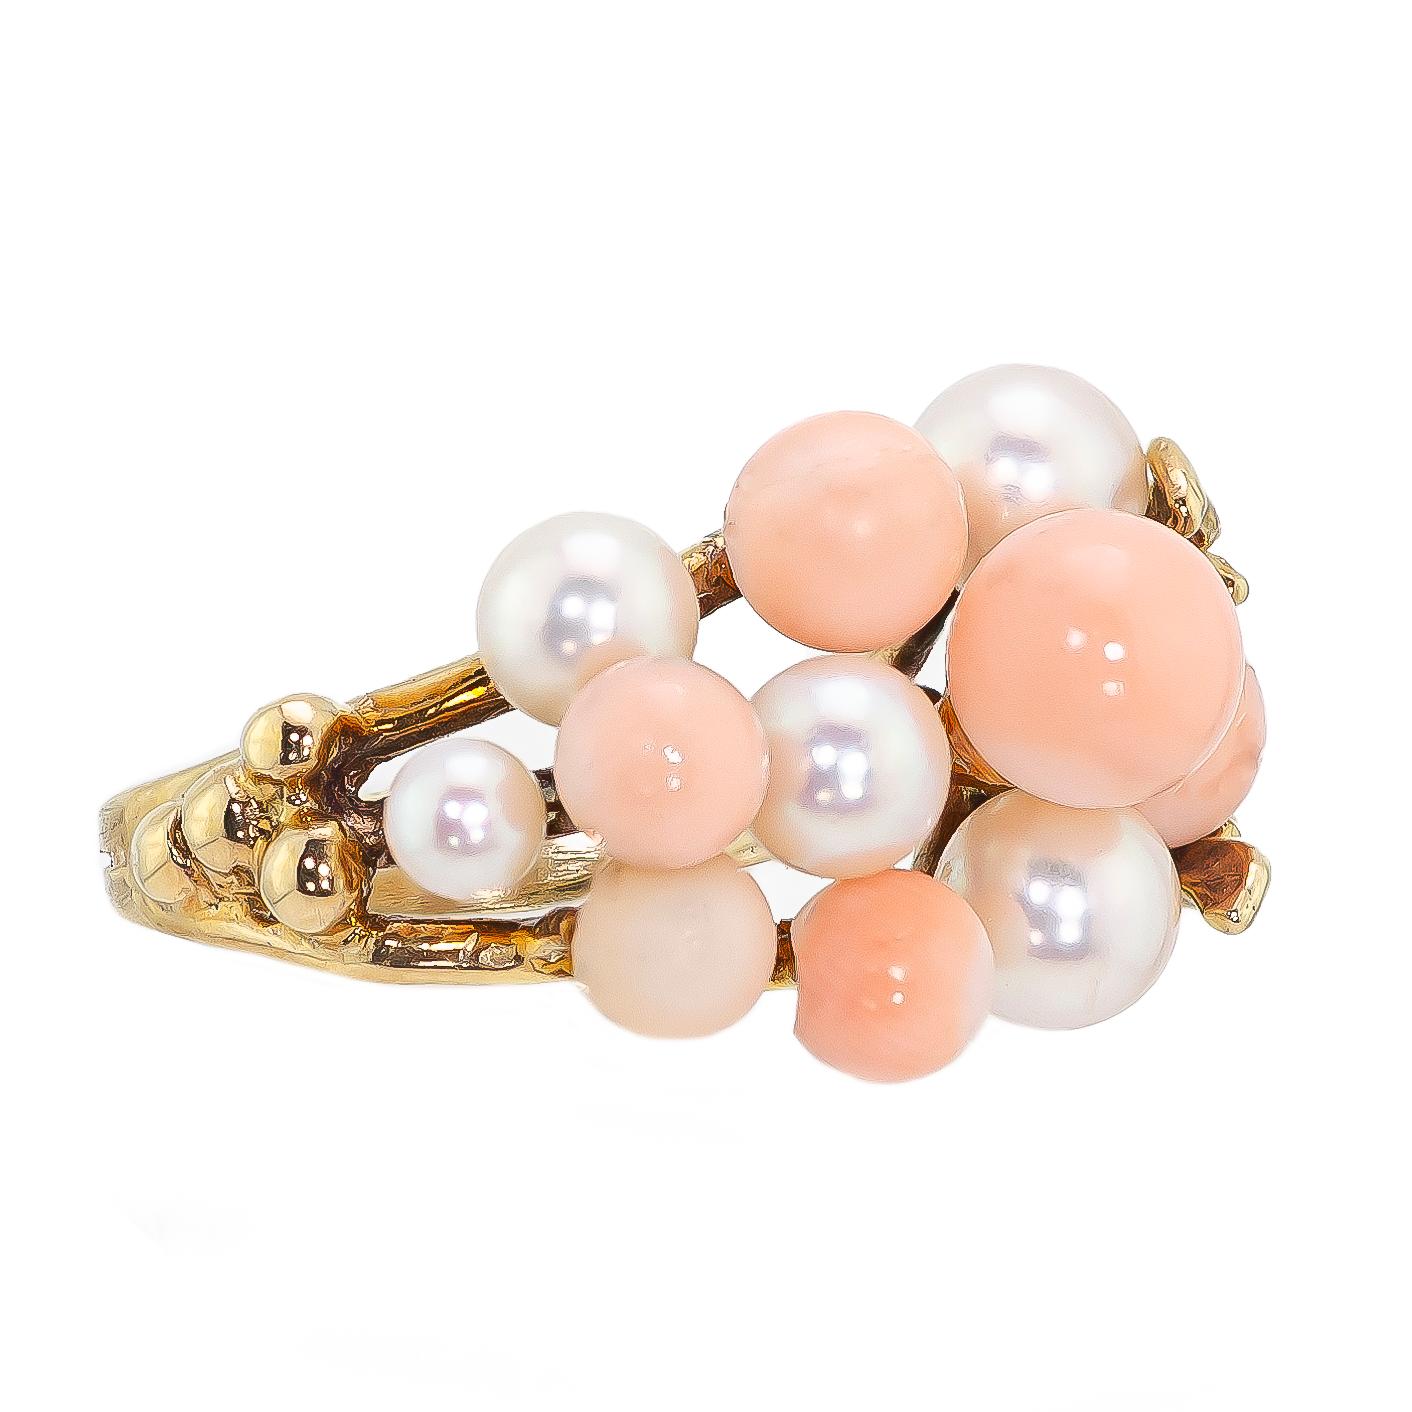 Vintage 1960 corail perle de culture et or jaune serti d'une variété de perles de corail rose clair rondes de tailles différentes et de perles de culture serties dans un style 